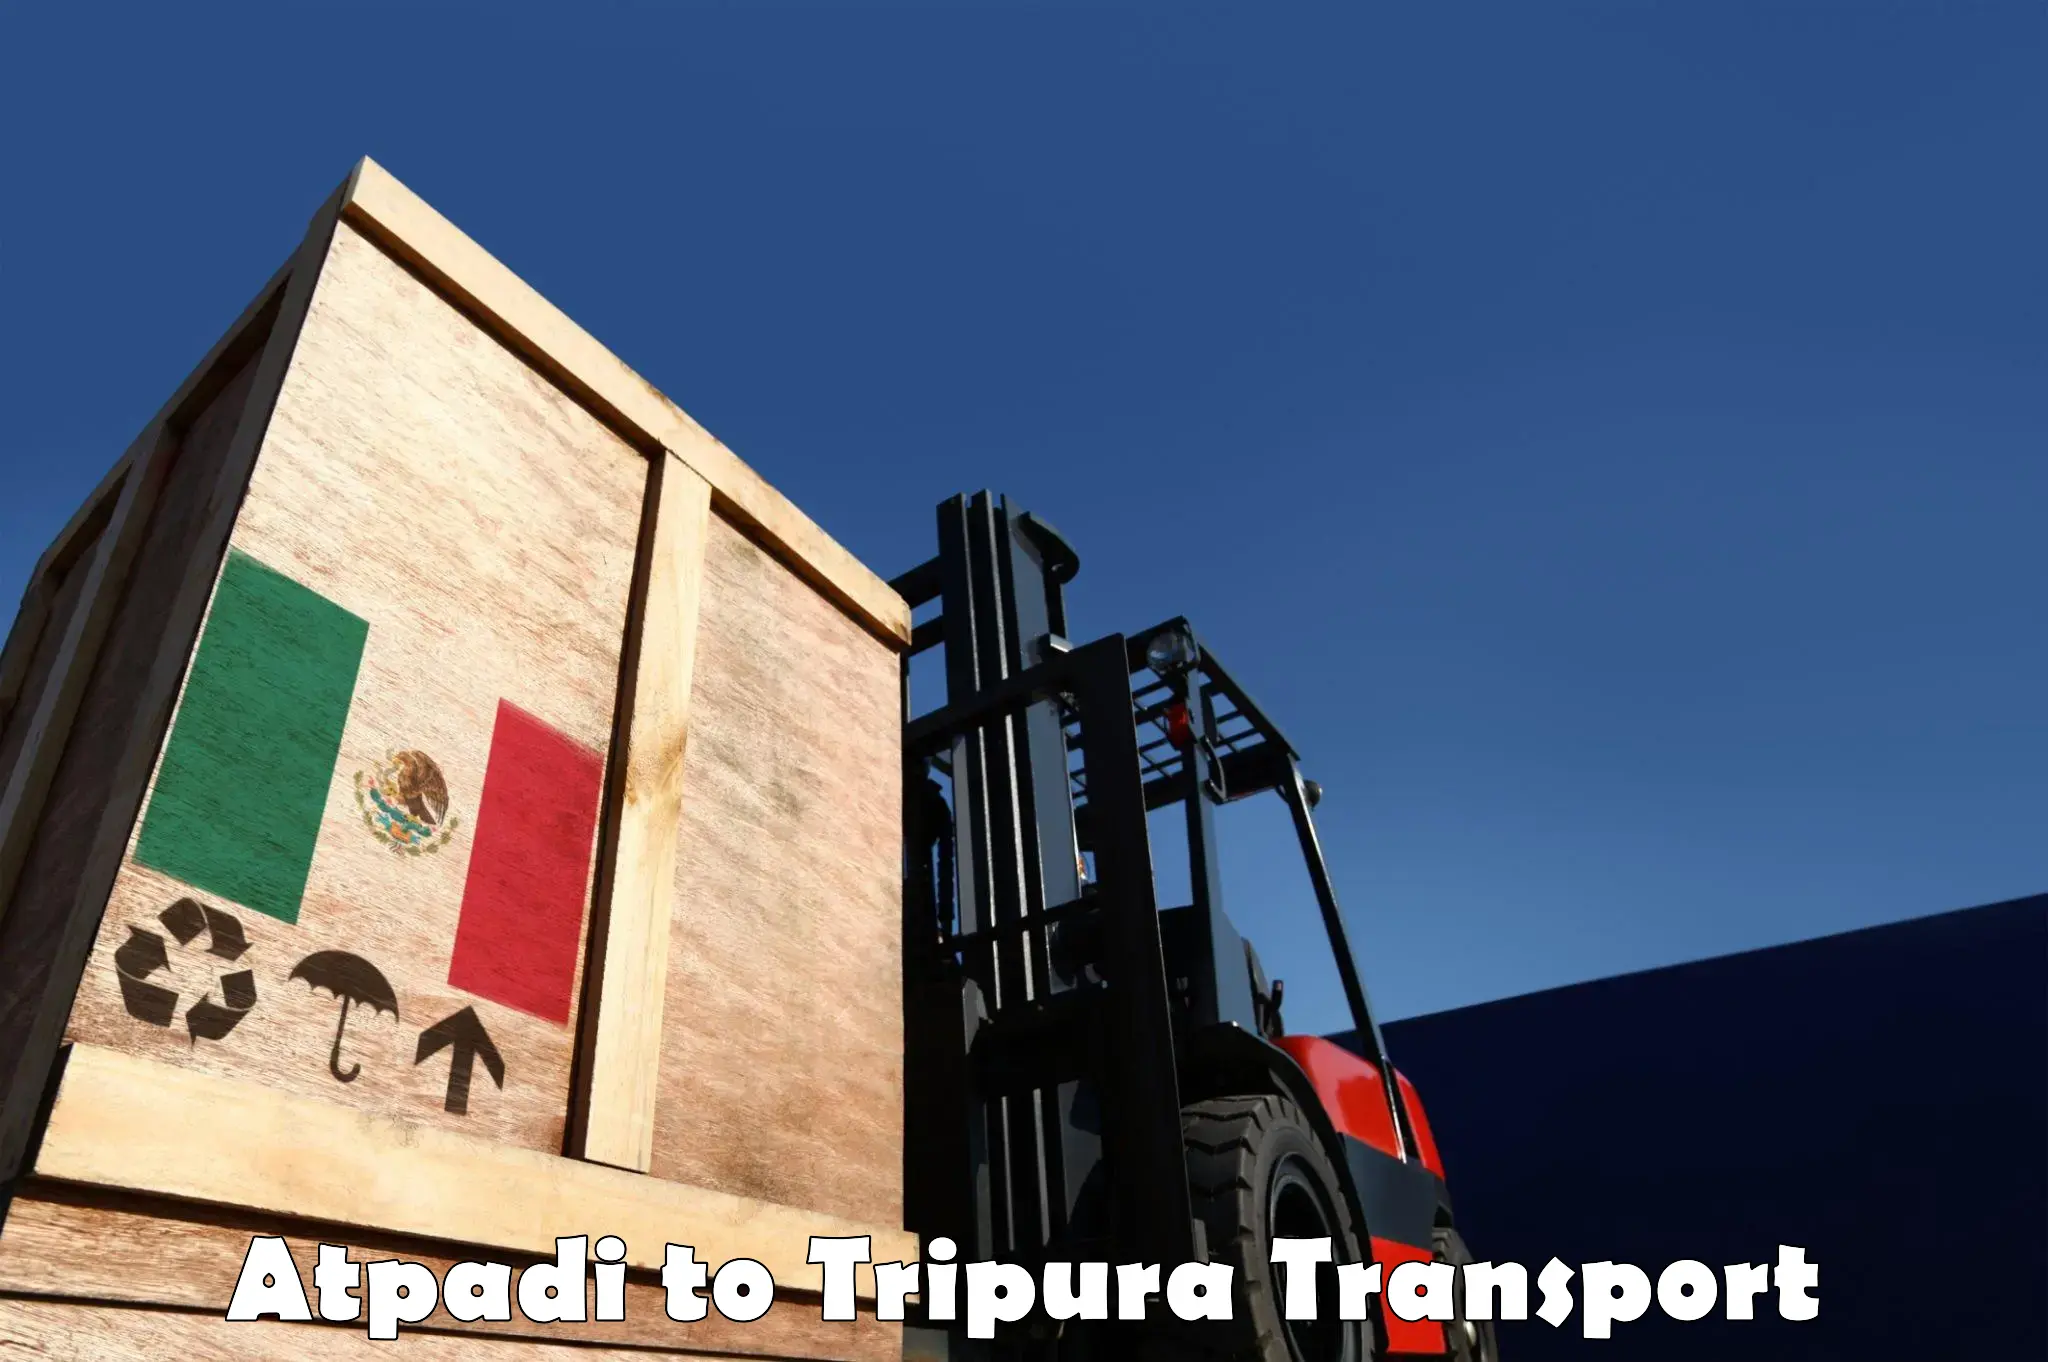 Transport in sharing Atpadi to Udaipur Tripura